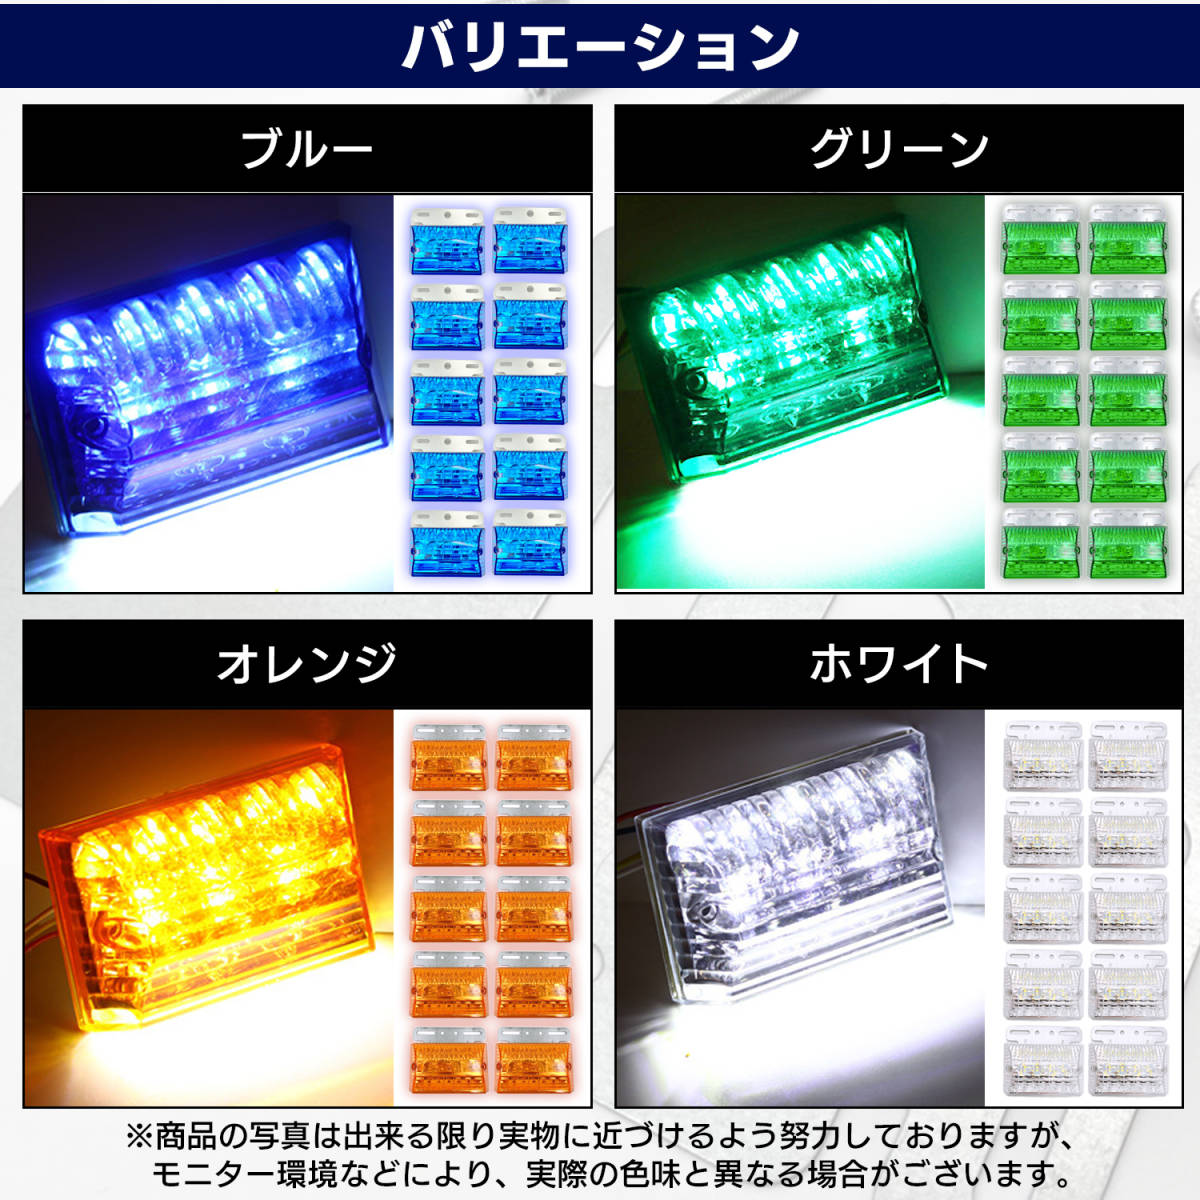 汎用 LED サイド マーカー 24V (オレンジ 10個) トラック デコトラ ダウン ライト ランプ 路肩灯 アンダー ドレスアップ カスタム 角型_画像6